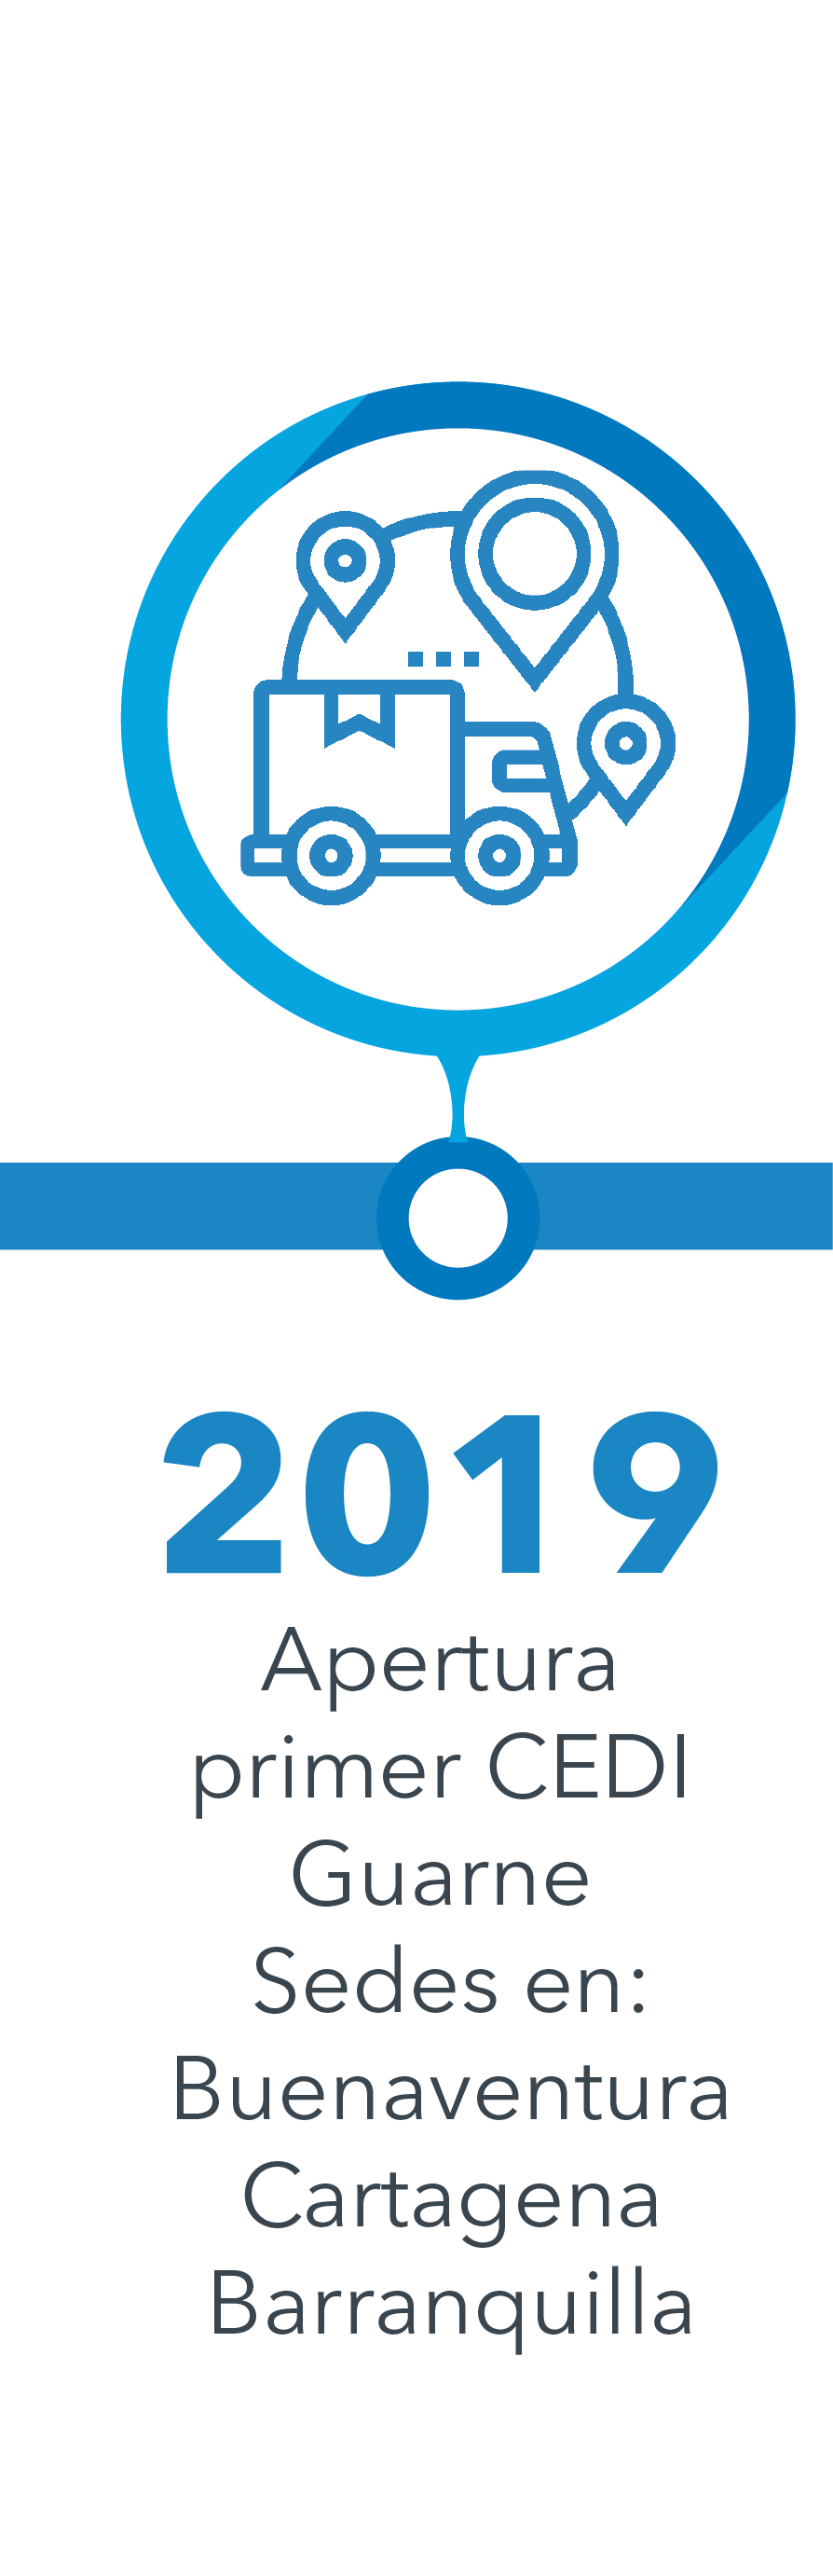 Año 2019 - Apertura de Cedi Guarne y Oficinas de Buenaventura, Cartagena y Barranquilla  